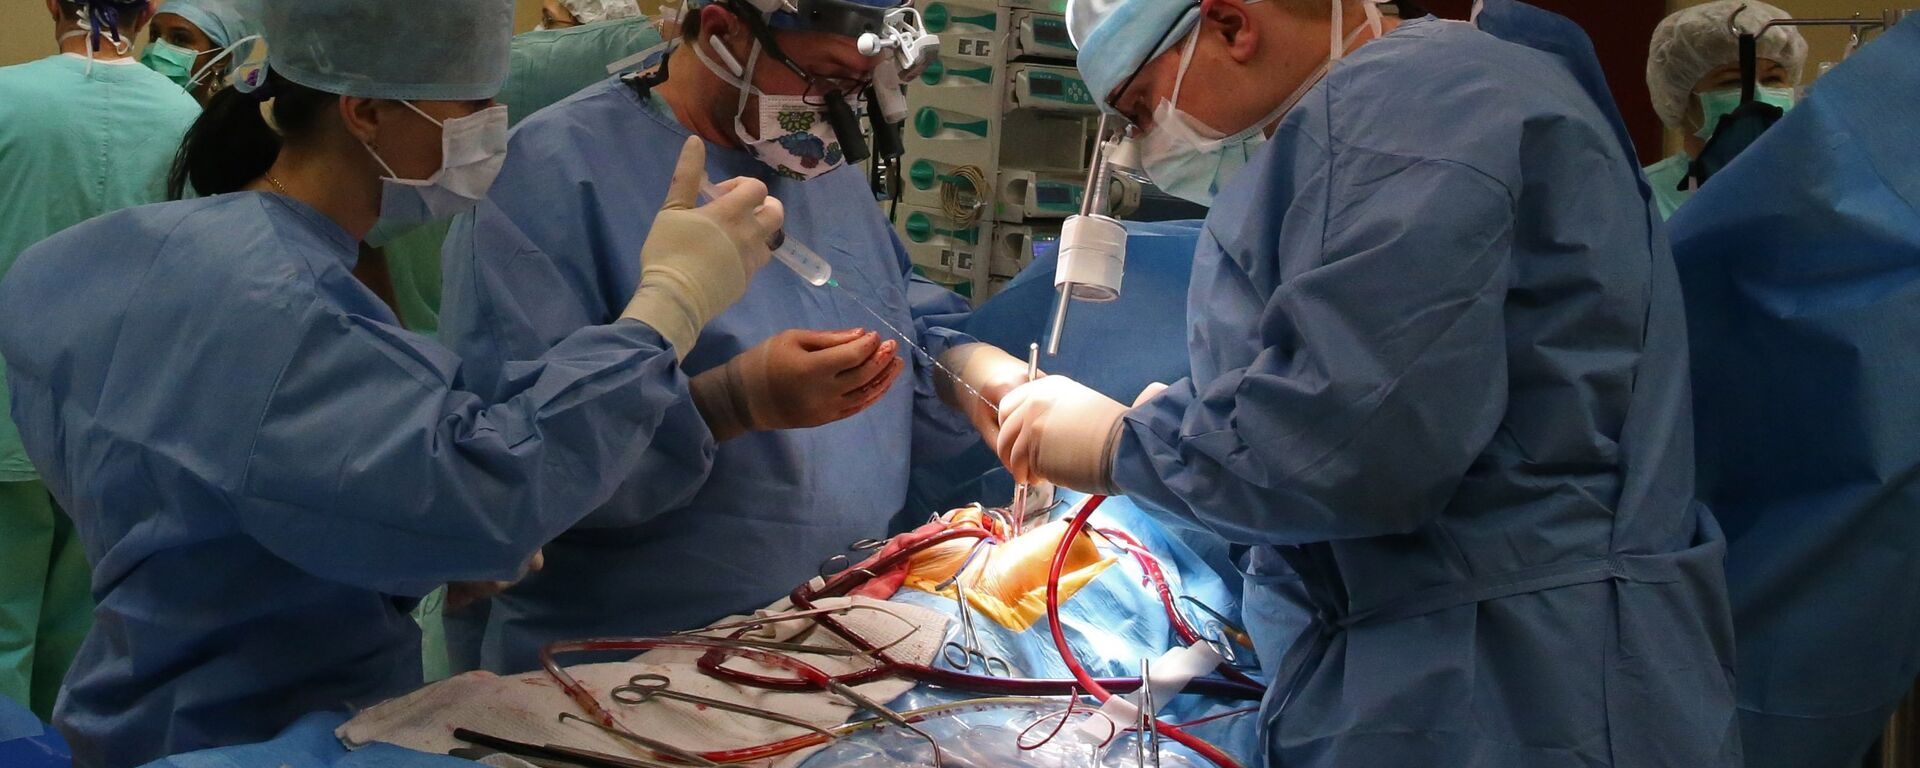 Хирурги проводят операцию на открытом сердце - Sputnik Latvija, 1920, 30.10.2020